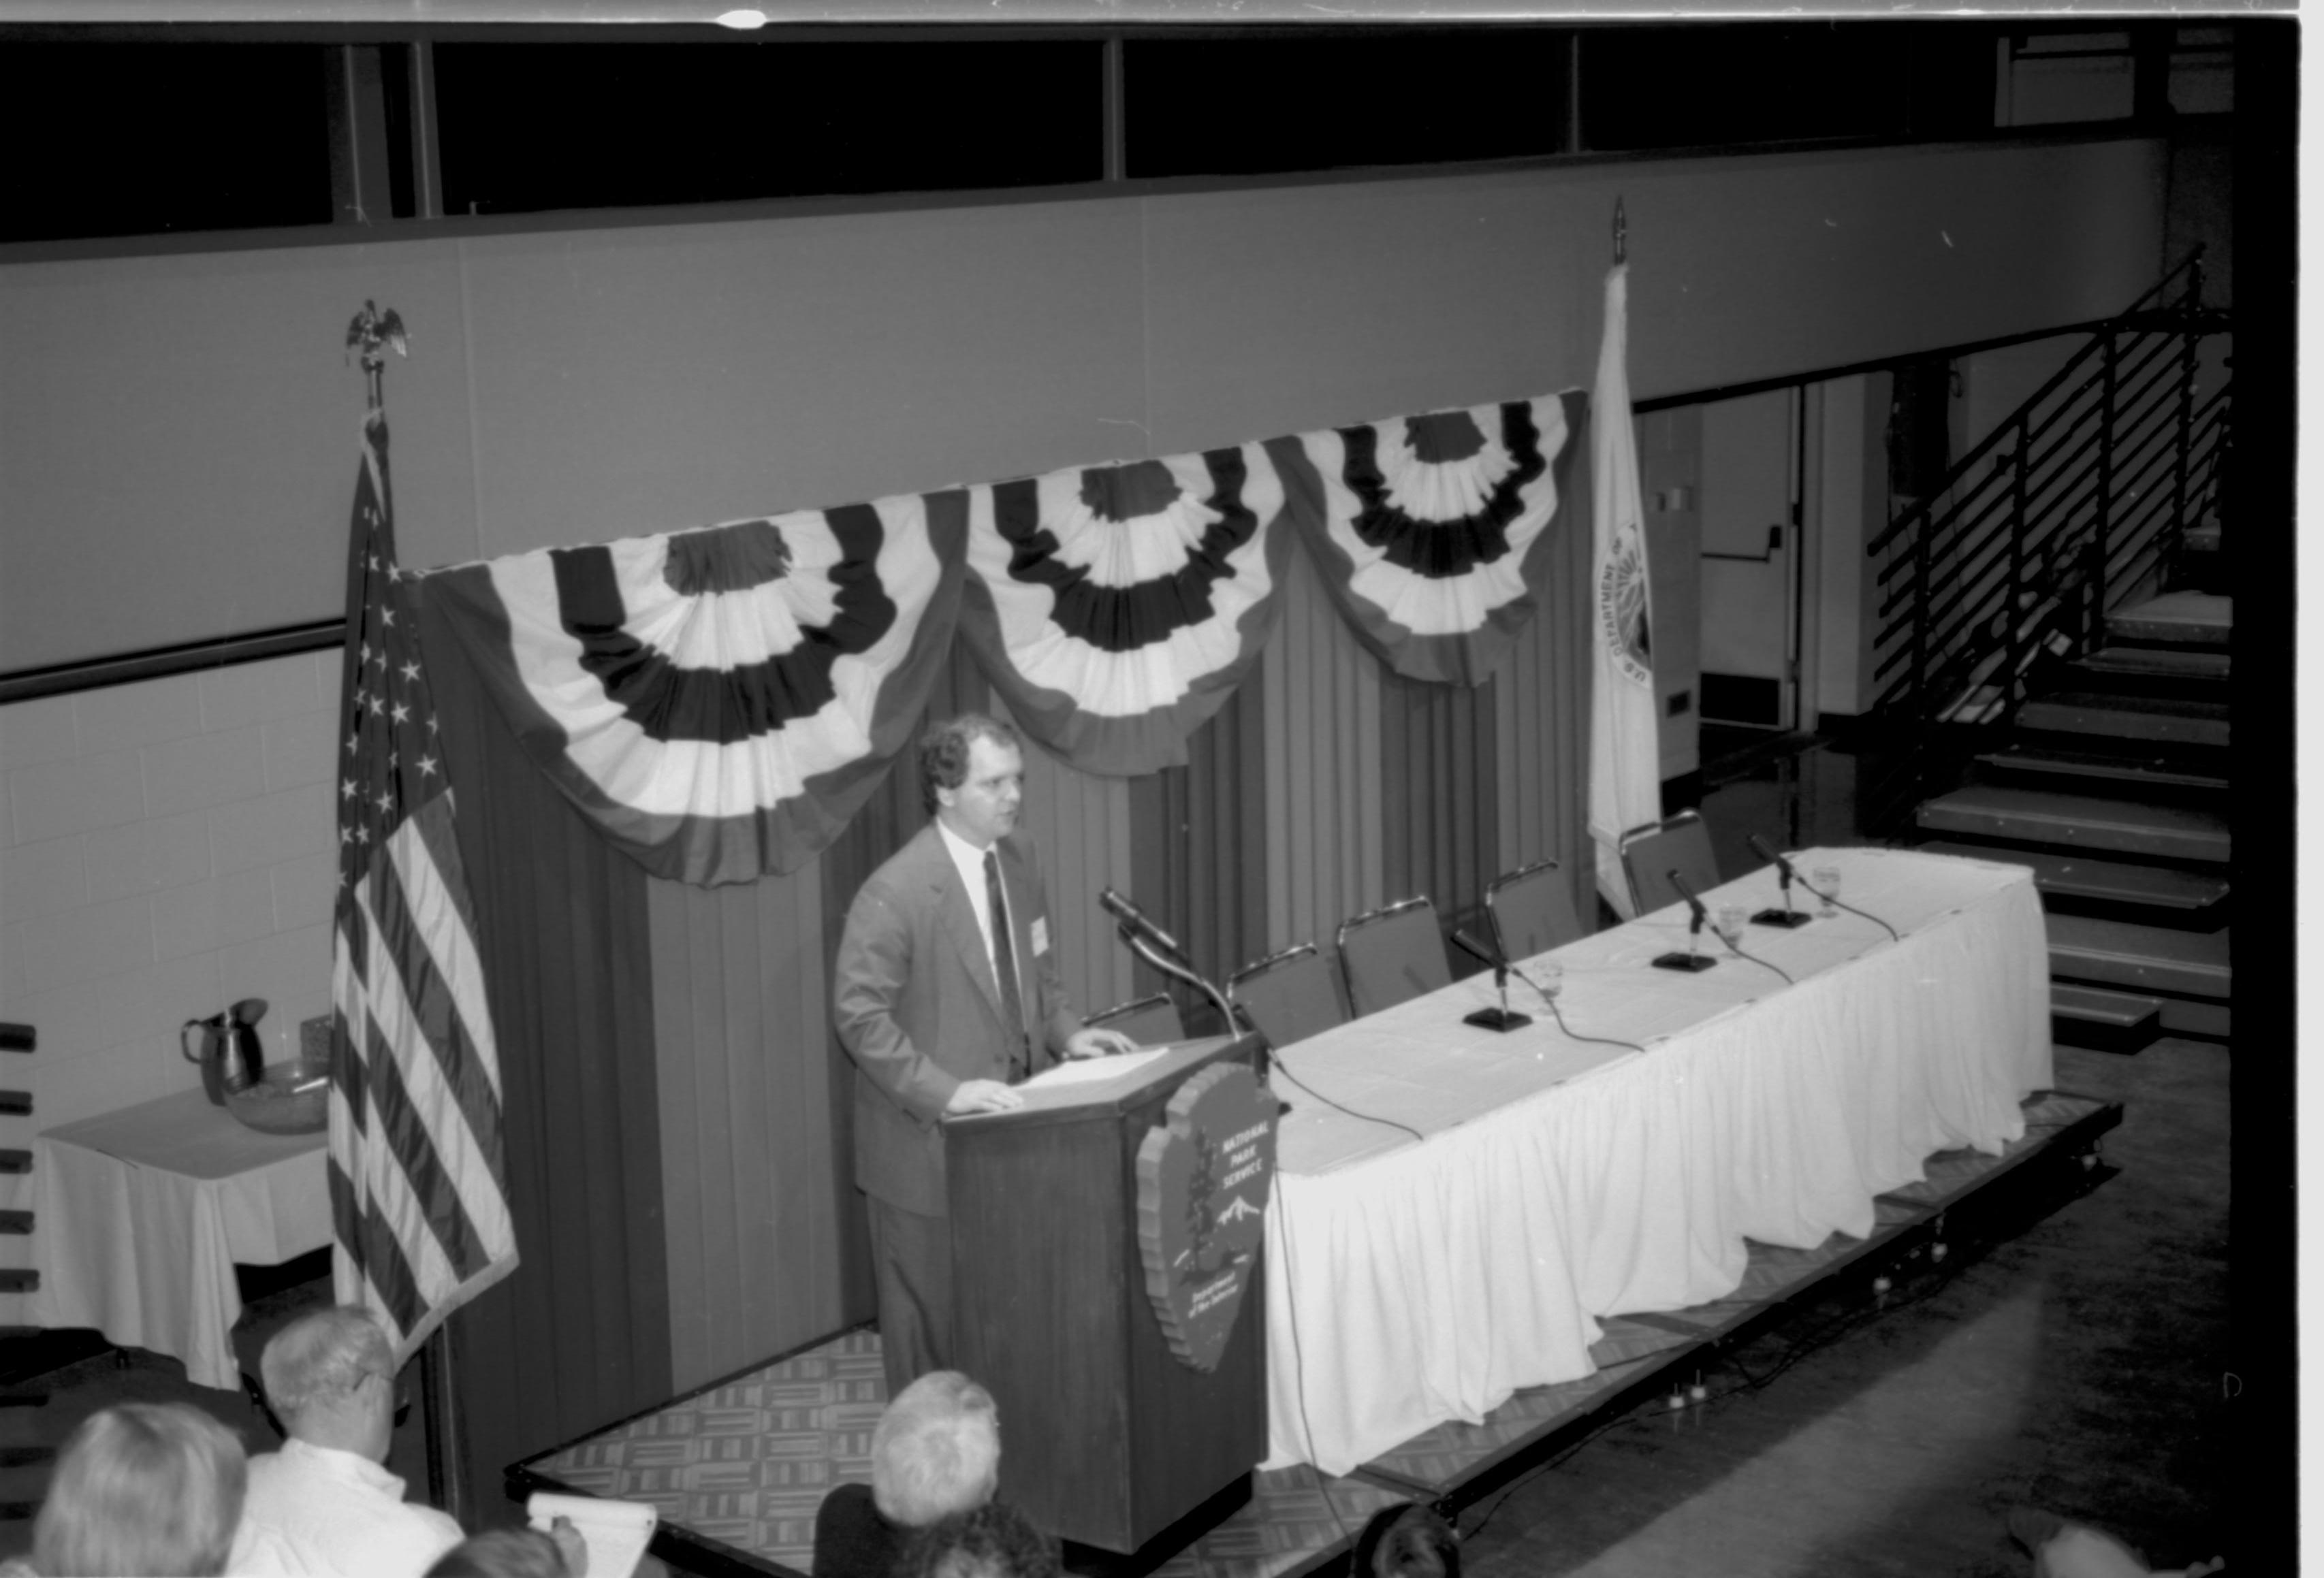 Speaker at podium. Lincoln Colloquium; UIS Roll#2, 4of4 Lincoln, Colloquium